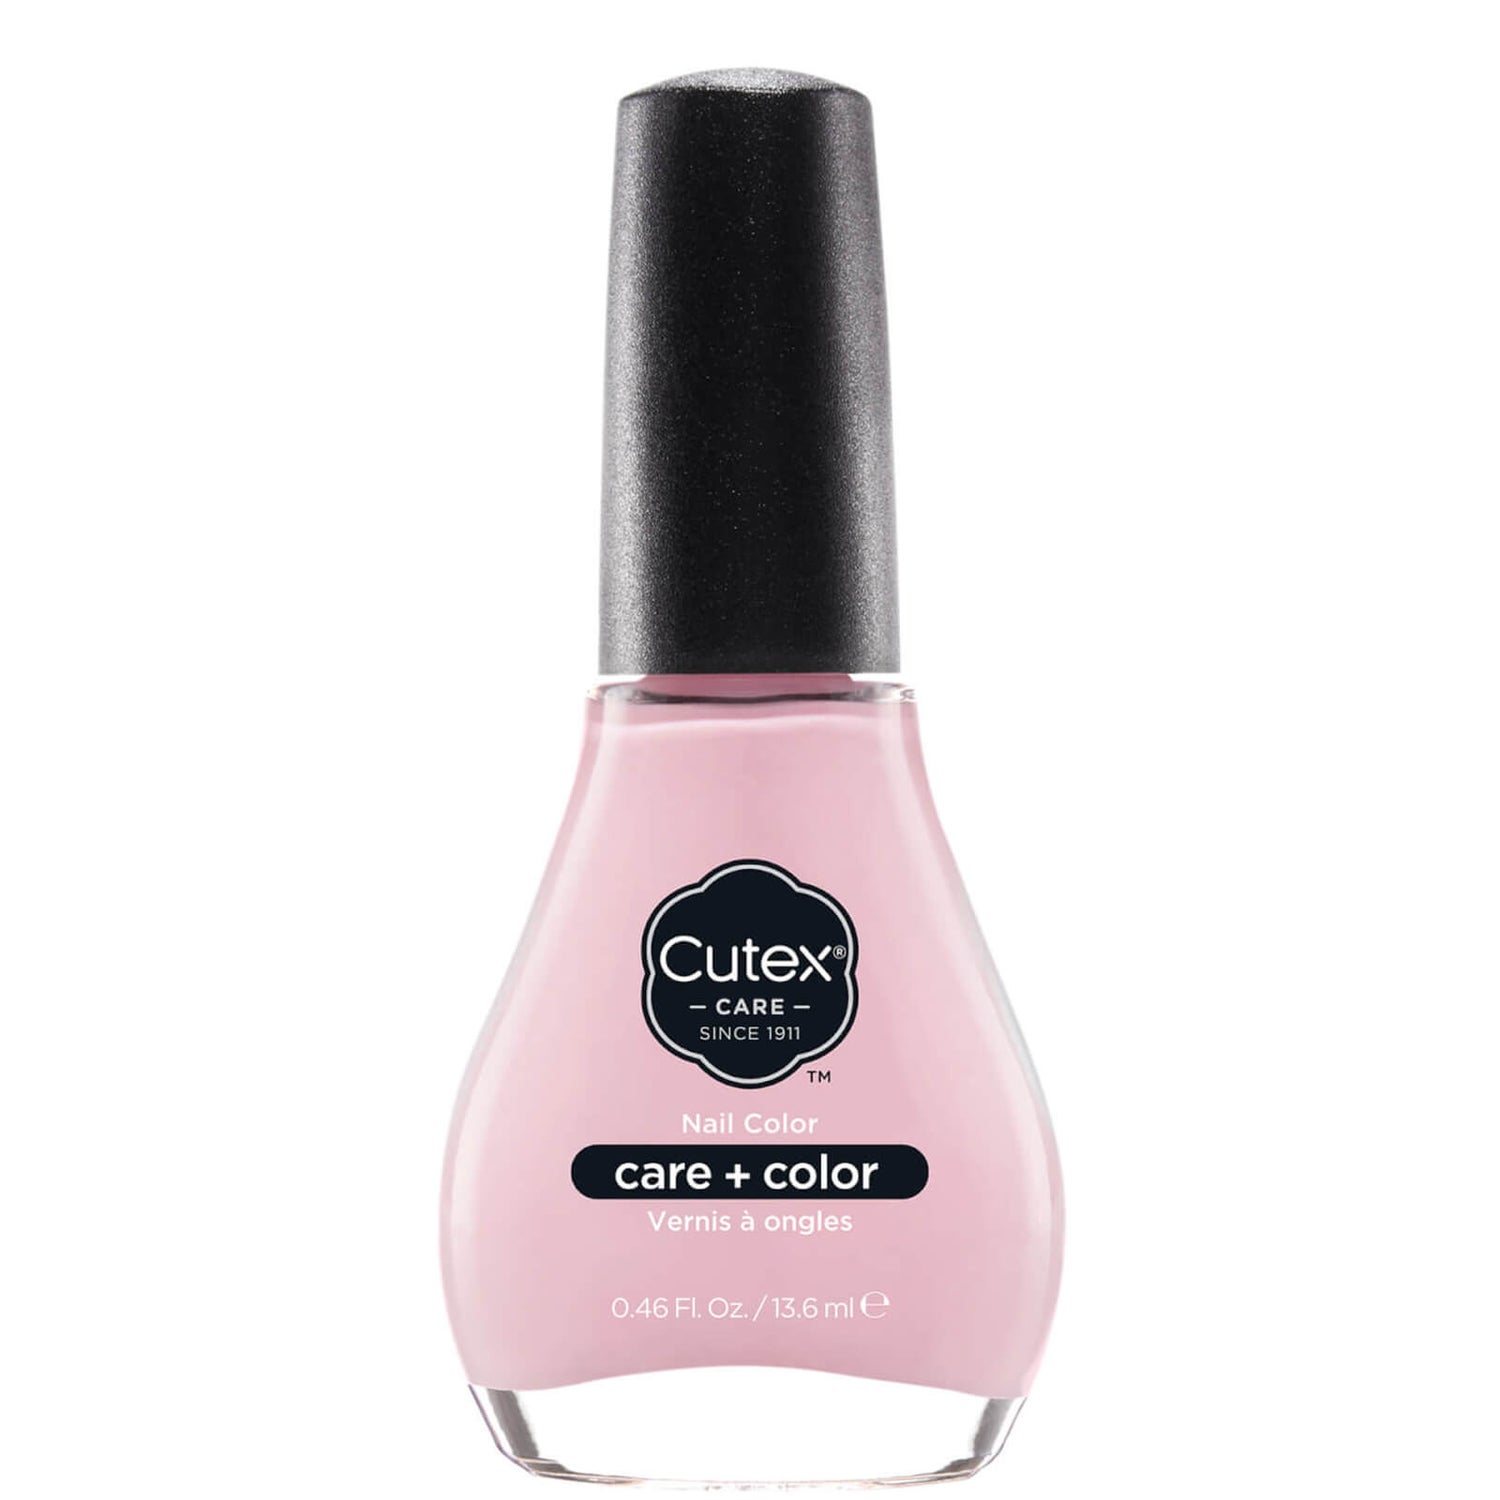 Cutex Care + Color Nail Polish - Bashful Kiss 110